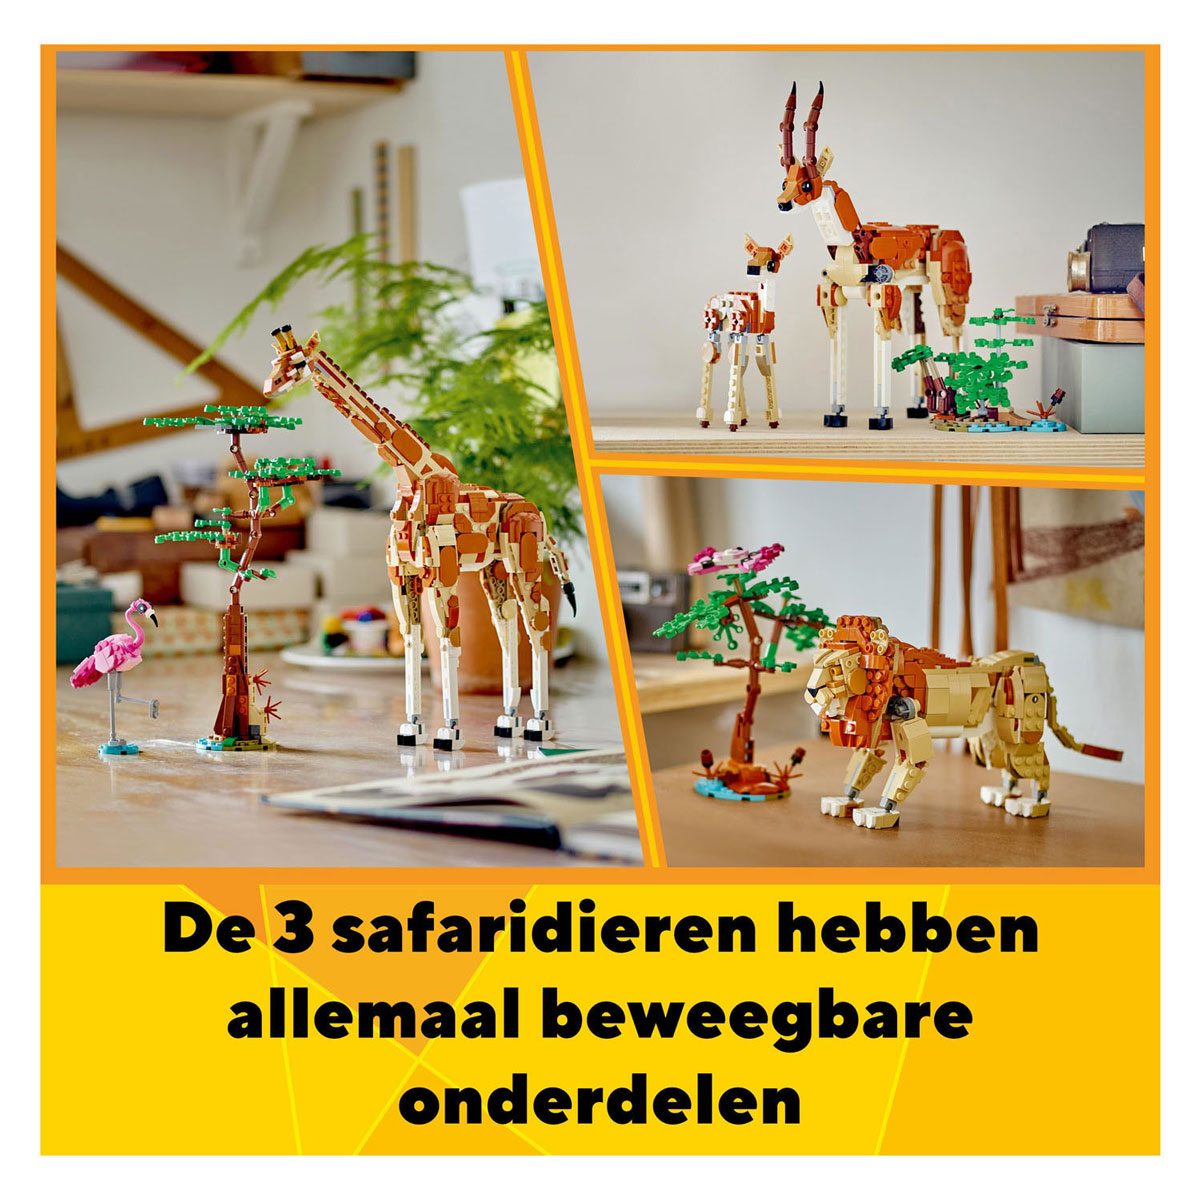 LEGO Creator 31150 Safaritiere